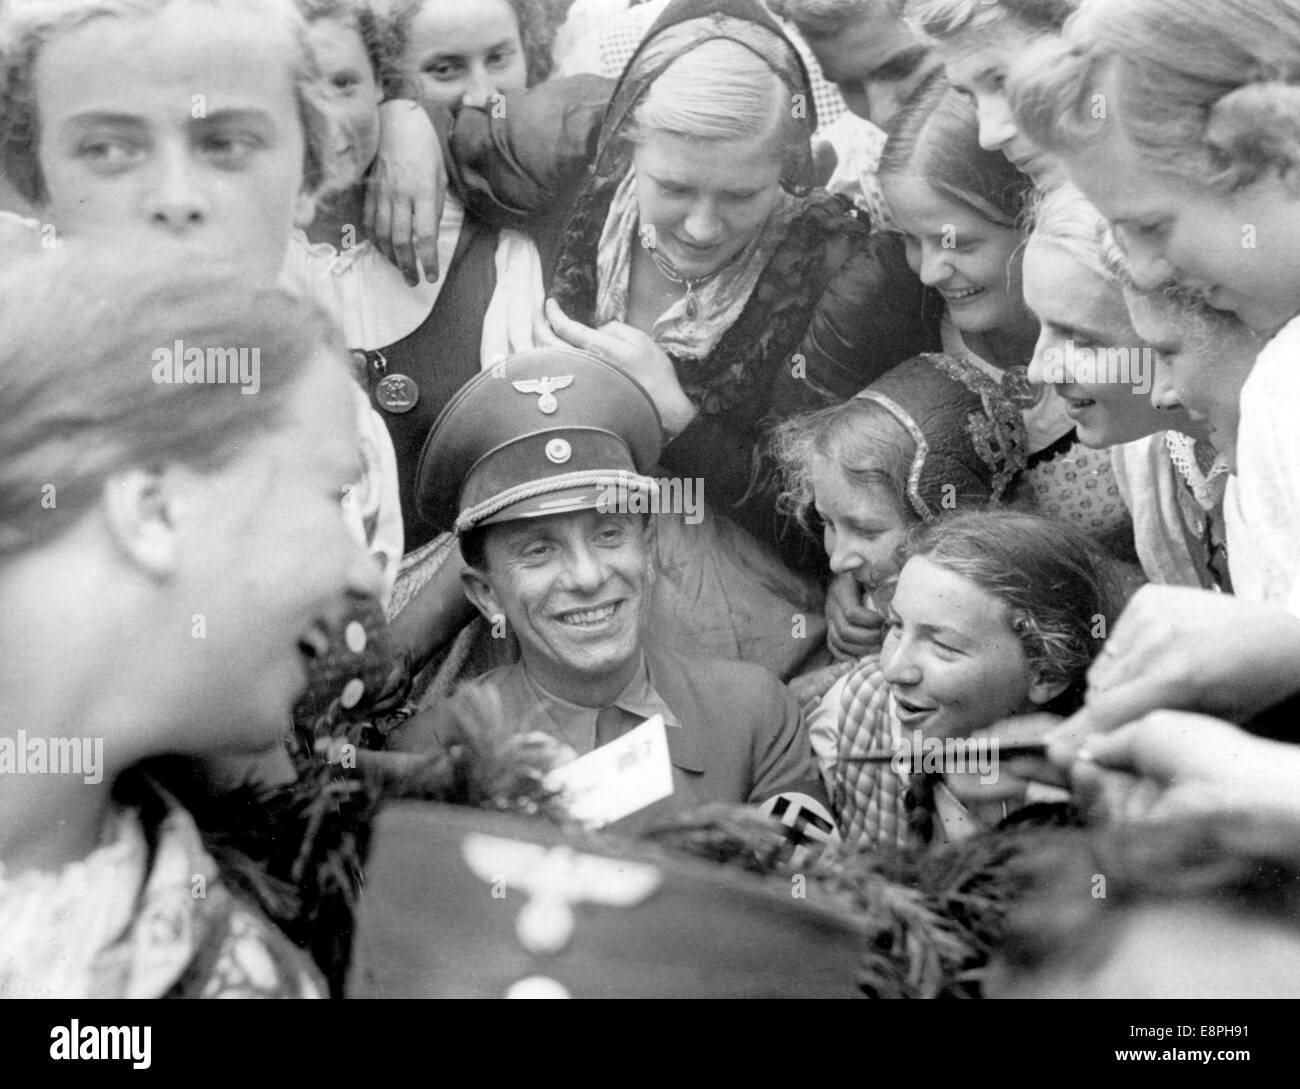 Nürnberger Rallye 1938 in Nürnberg, Deutschland - der Reichsminister der Propaganda Joseph Goebbels ist umgeben von Mädchen aus der Ostmark, die gerne ein Autogramm von ihm hätten. (Qualitätsmängel aufgrund der historischen Bildkopie) Fotoarchiv für Zeitgeschichtee - KEIN KABELDIENST - Stockfoto